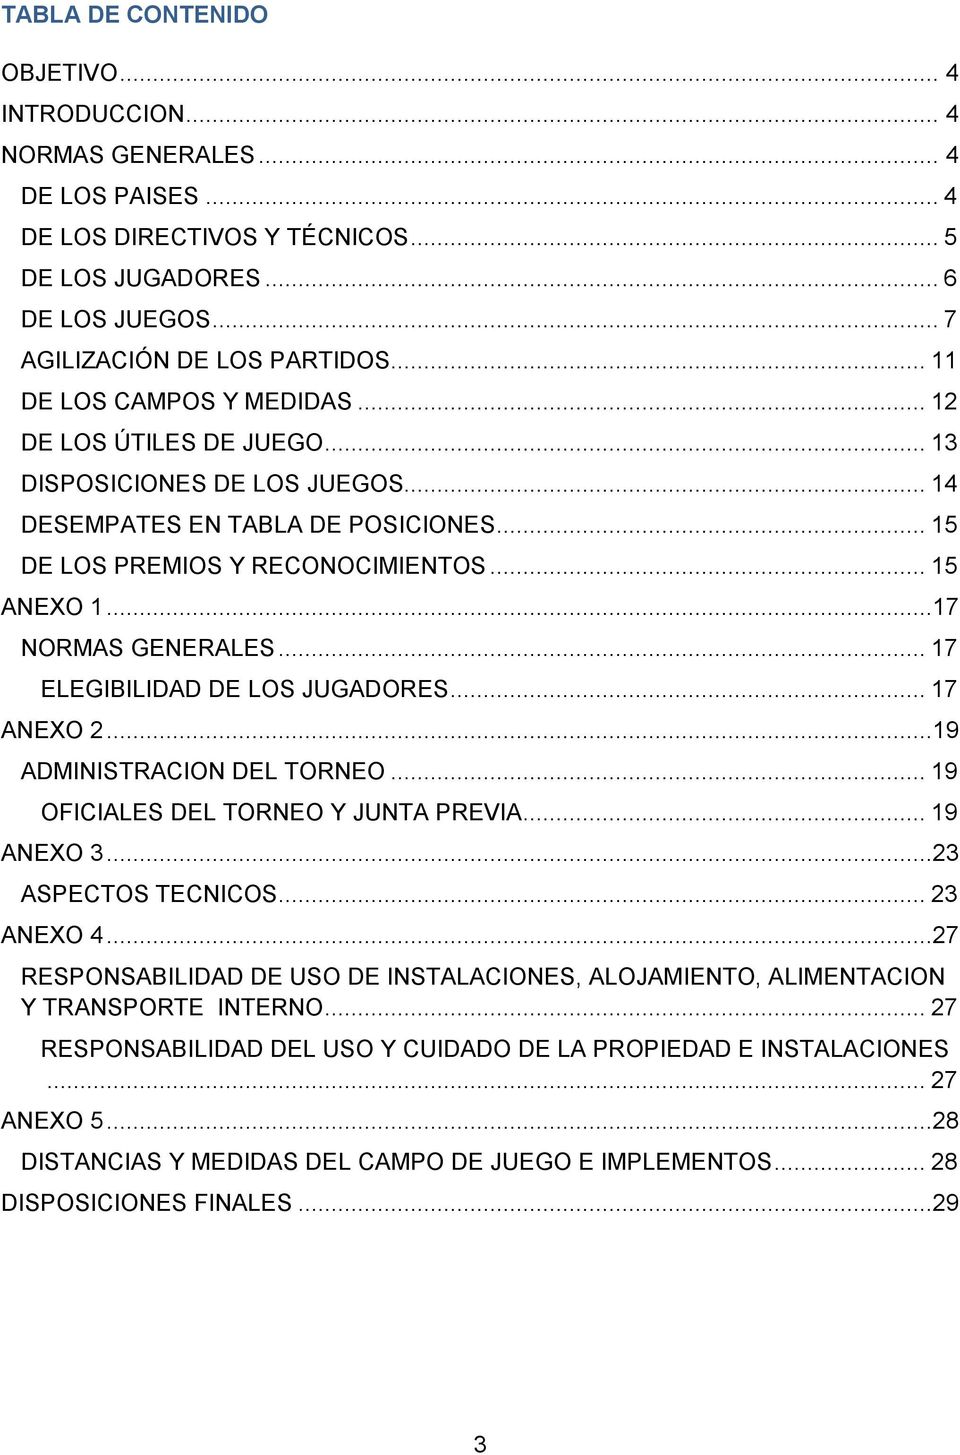 ..17 NORMAS GENERALES... 17 ELEGIBILIDAD DE LOS JUGADORES... 17 ANEXO 2...19 ADMINISTRACION DEL TORNEO... 19 OFICIALES DEL TORNEO Y JUNTA PREVIA... 19 ANEXO 3...23 ASPECTOS TECNICOS... 23 ANEXO 4.